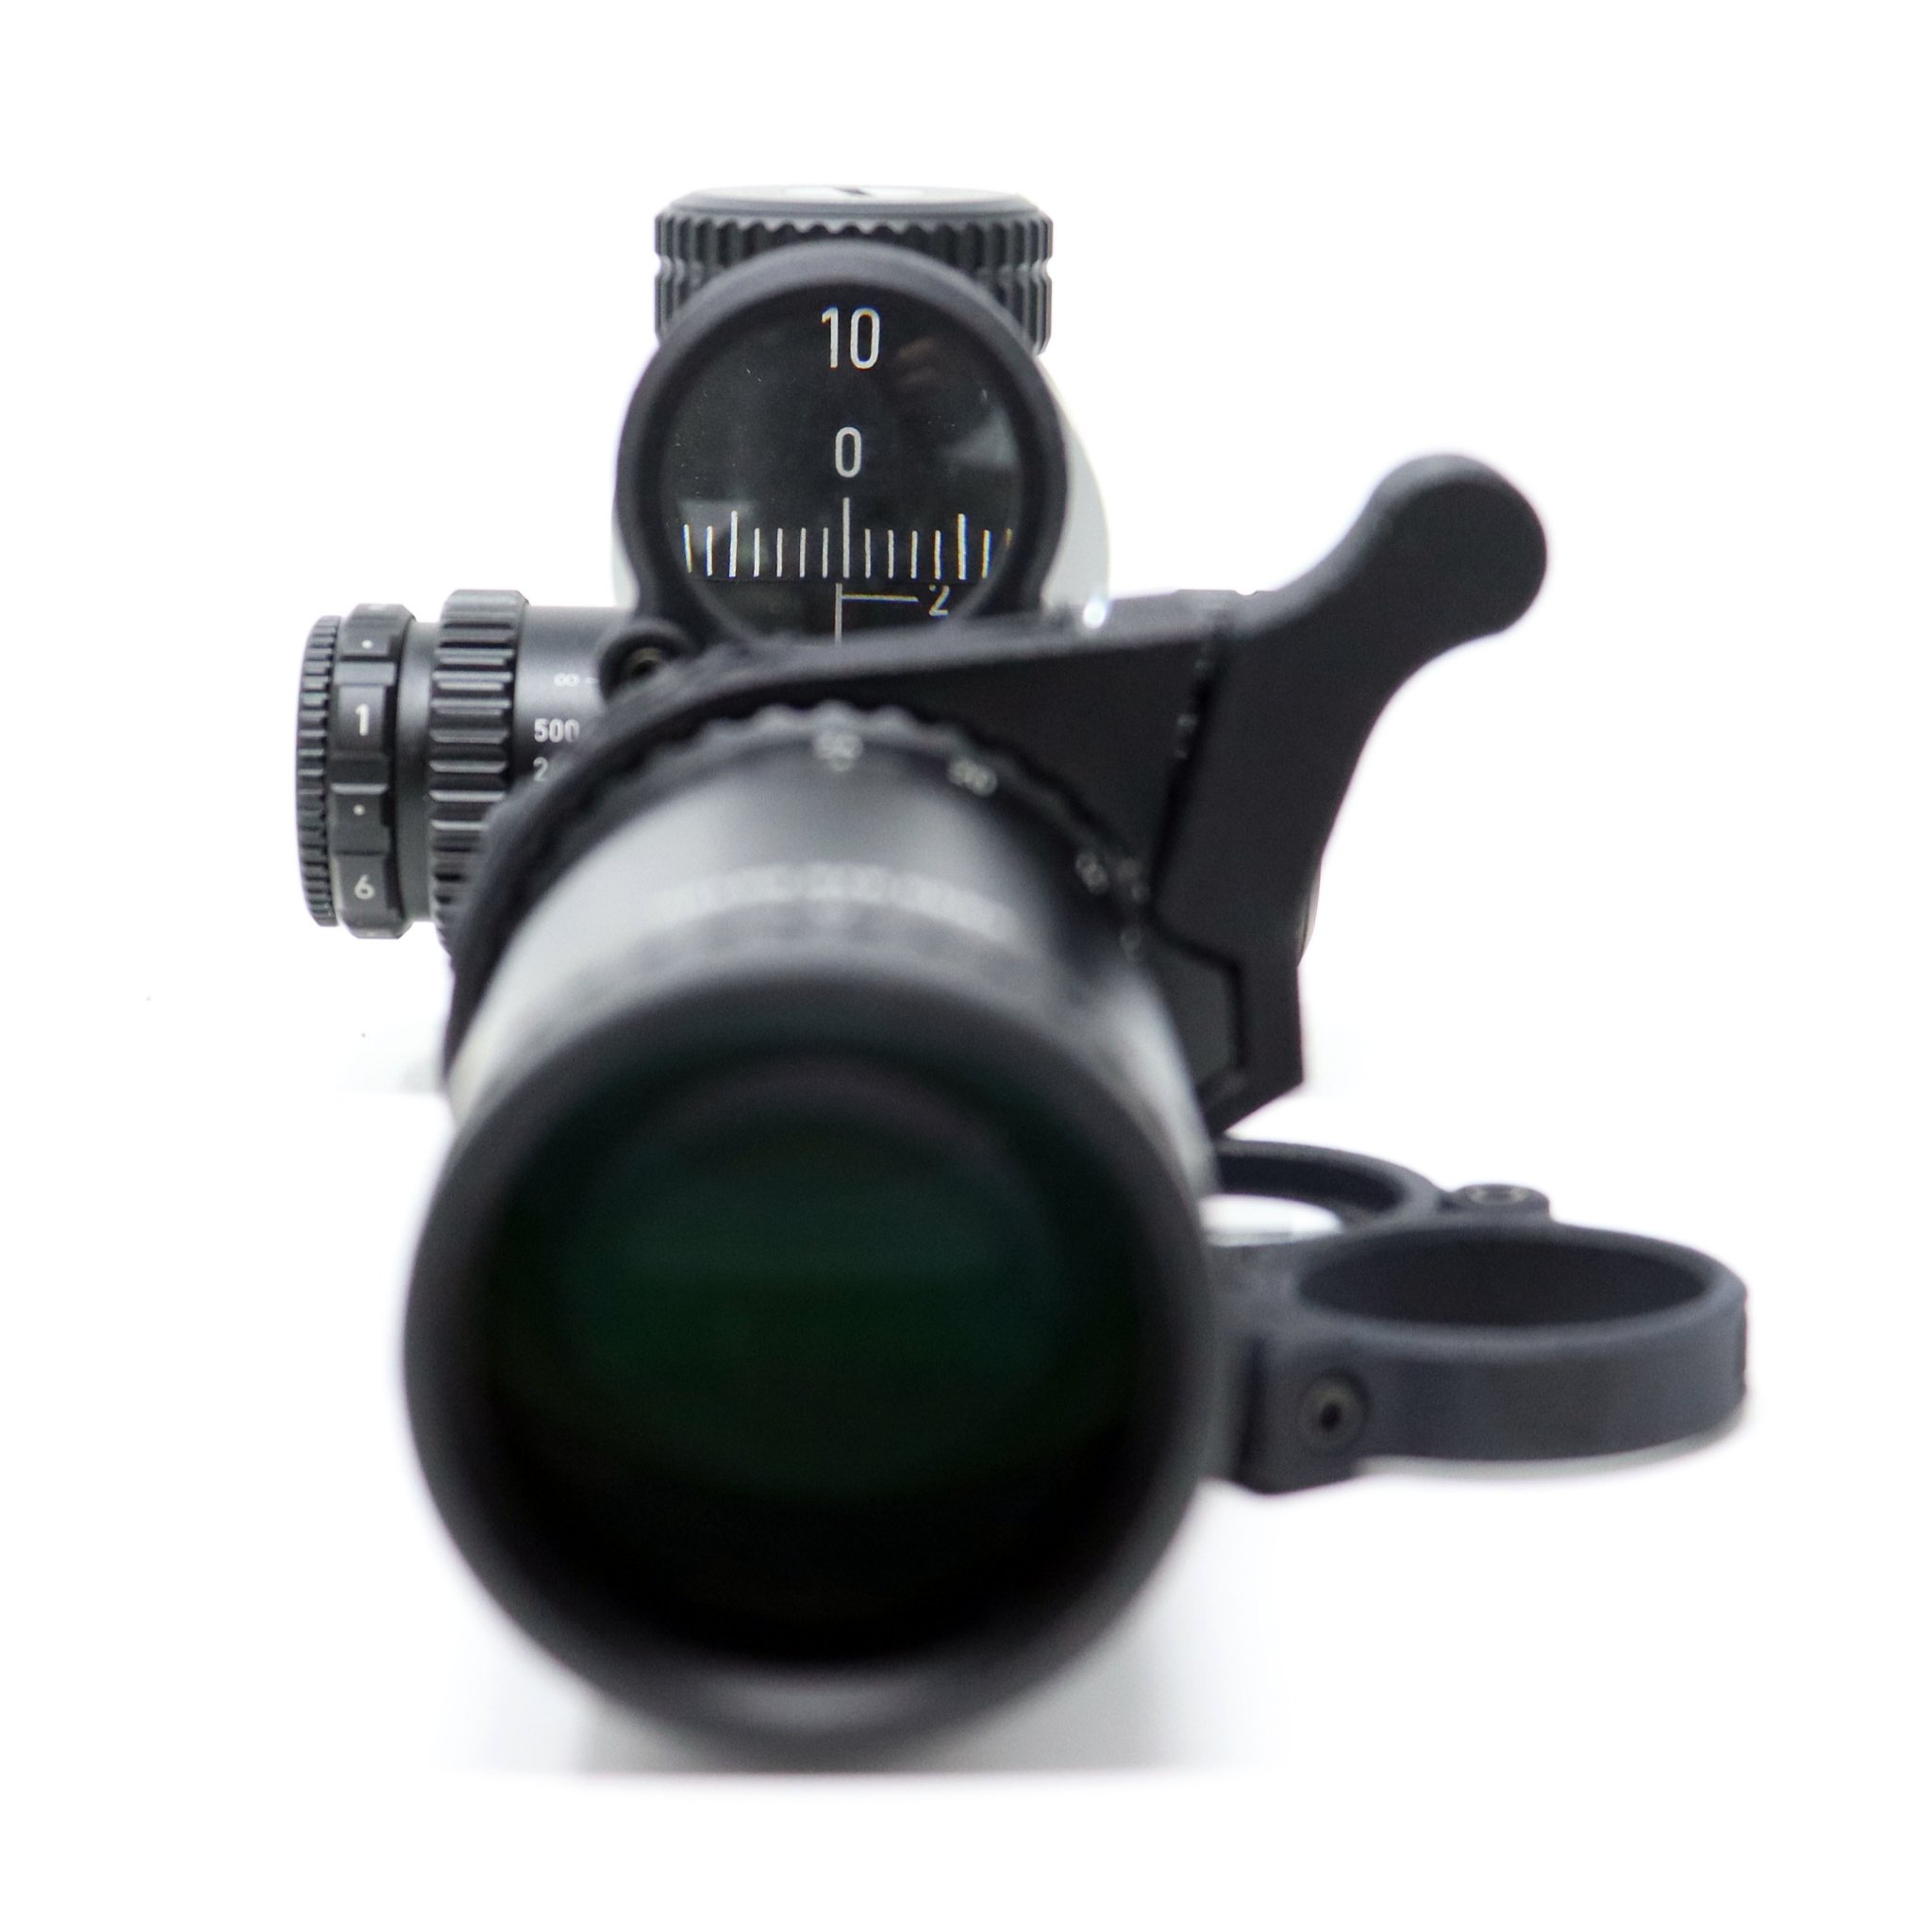 magnifier on scope.jpg